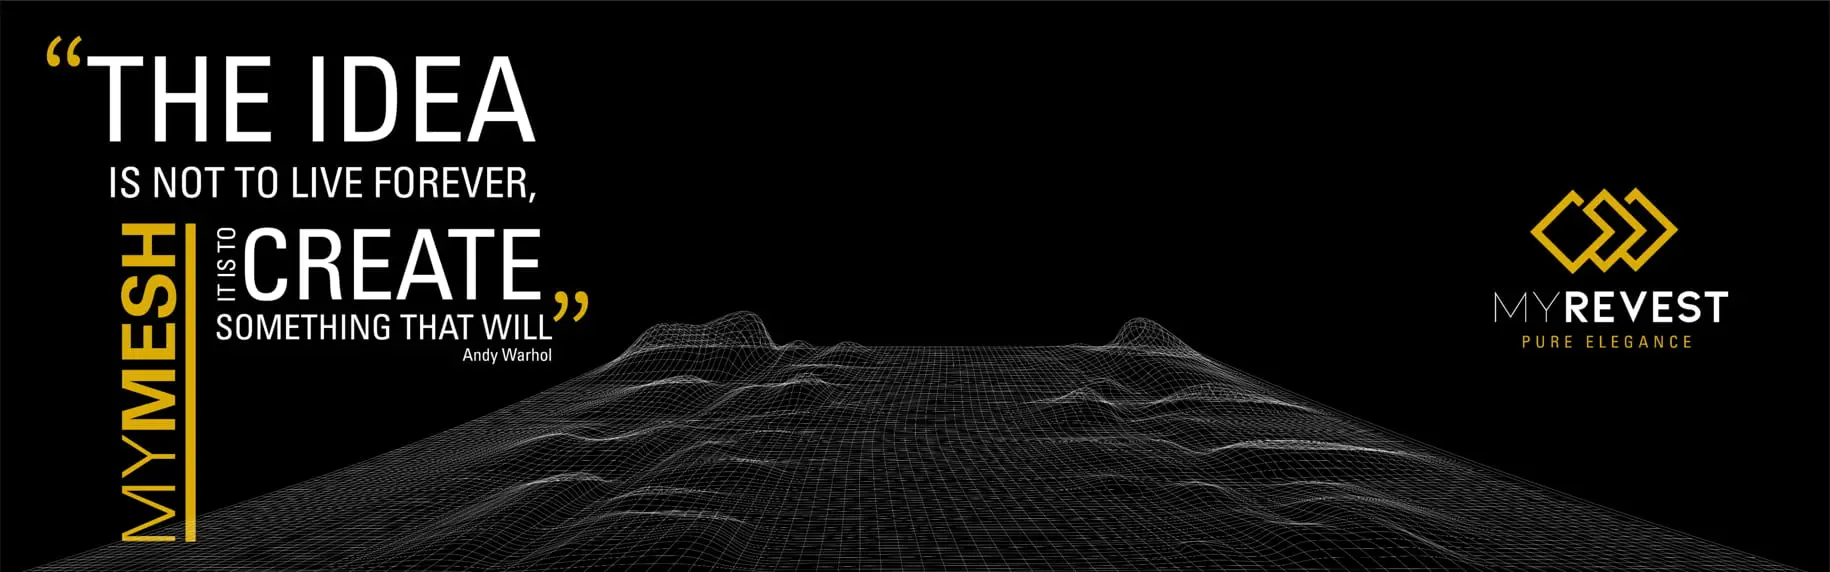 Plani 3D me një rrjetë prej fibër të qelqit të shtrirë mbi një sfond të zi dhe me logon e MyRevest në pjesën e sipërme